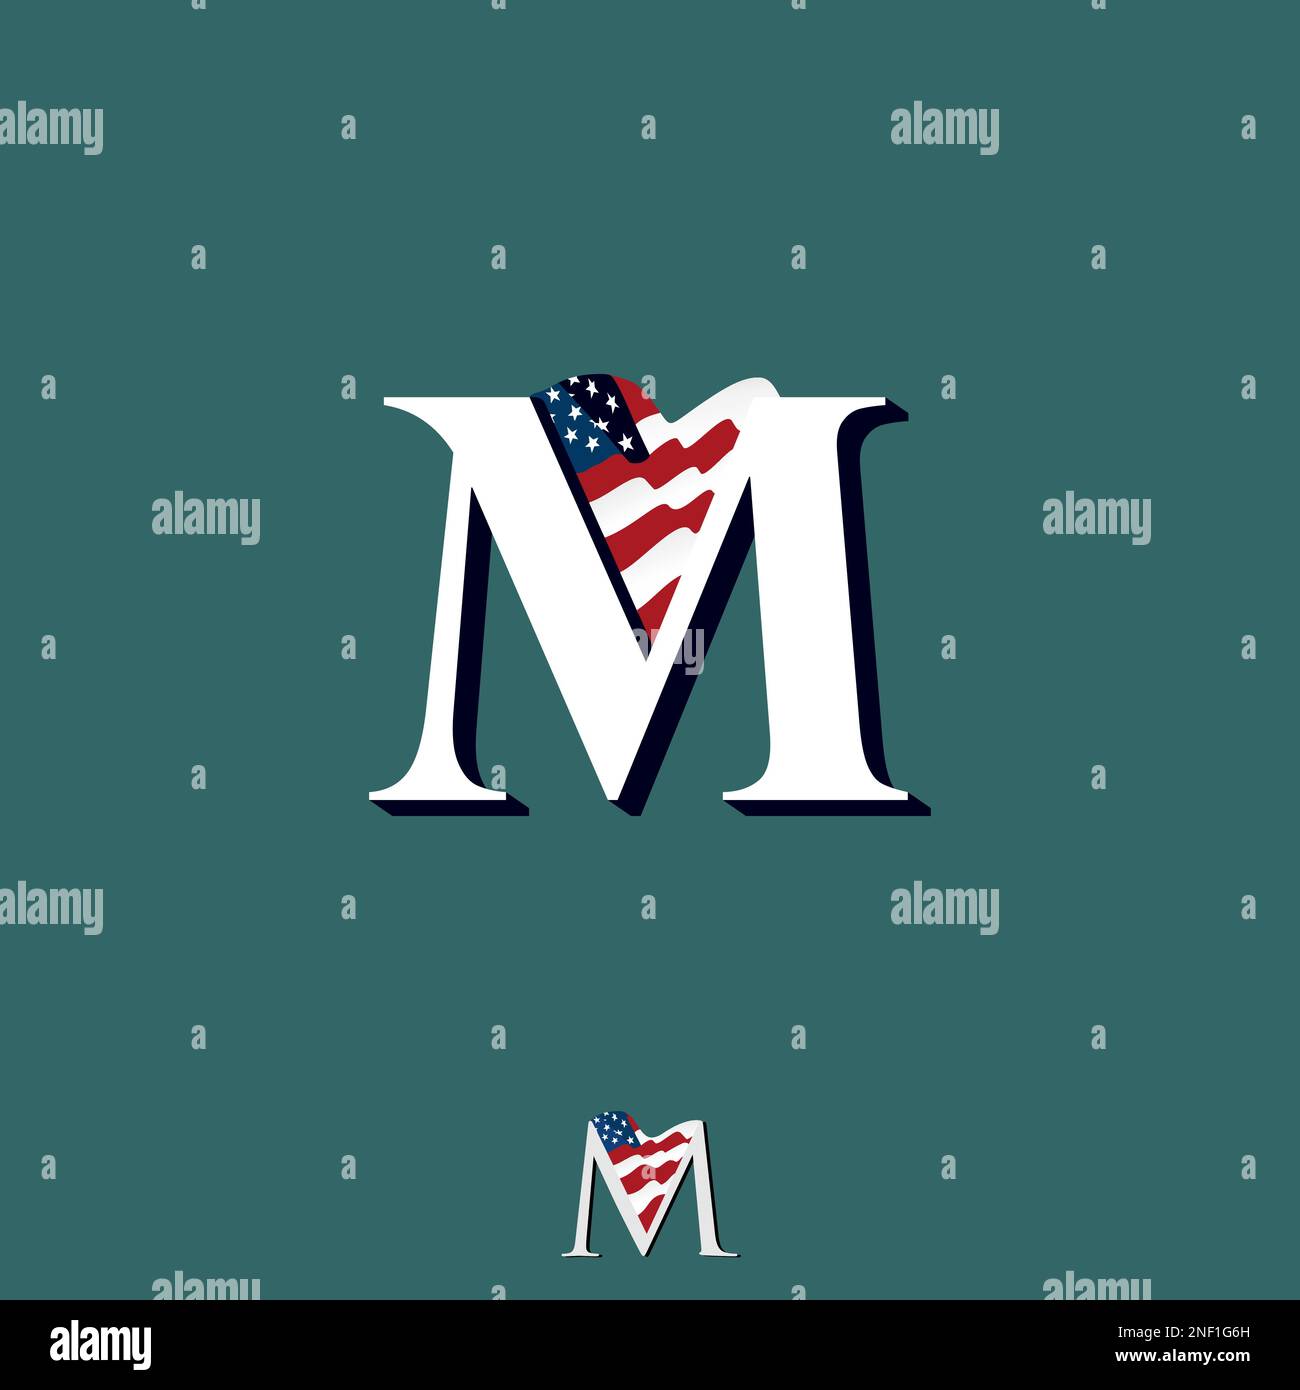 Serifenförmiger Buchstabe M mit amerikanischer Flagge Grafik Symbol Logo Design abstraktes Konzept Vektormaterial. Wird als Symbol verwendet, das sich auf die Initiale oder das Land bezieht Stock Vektor